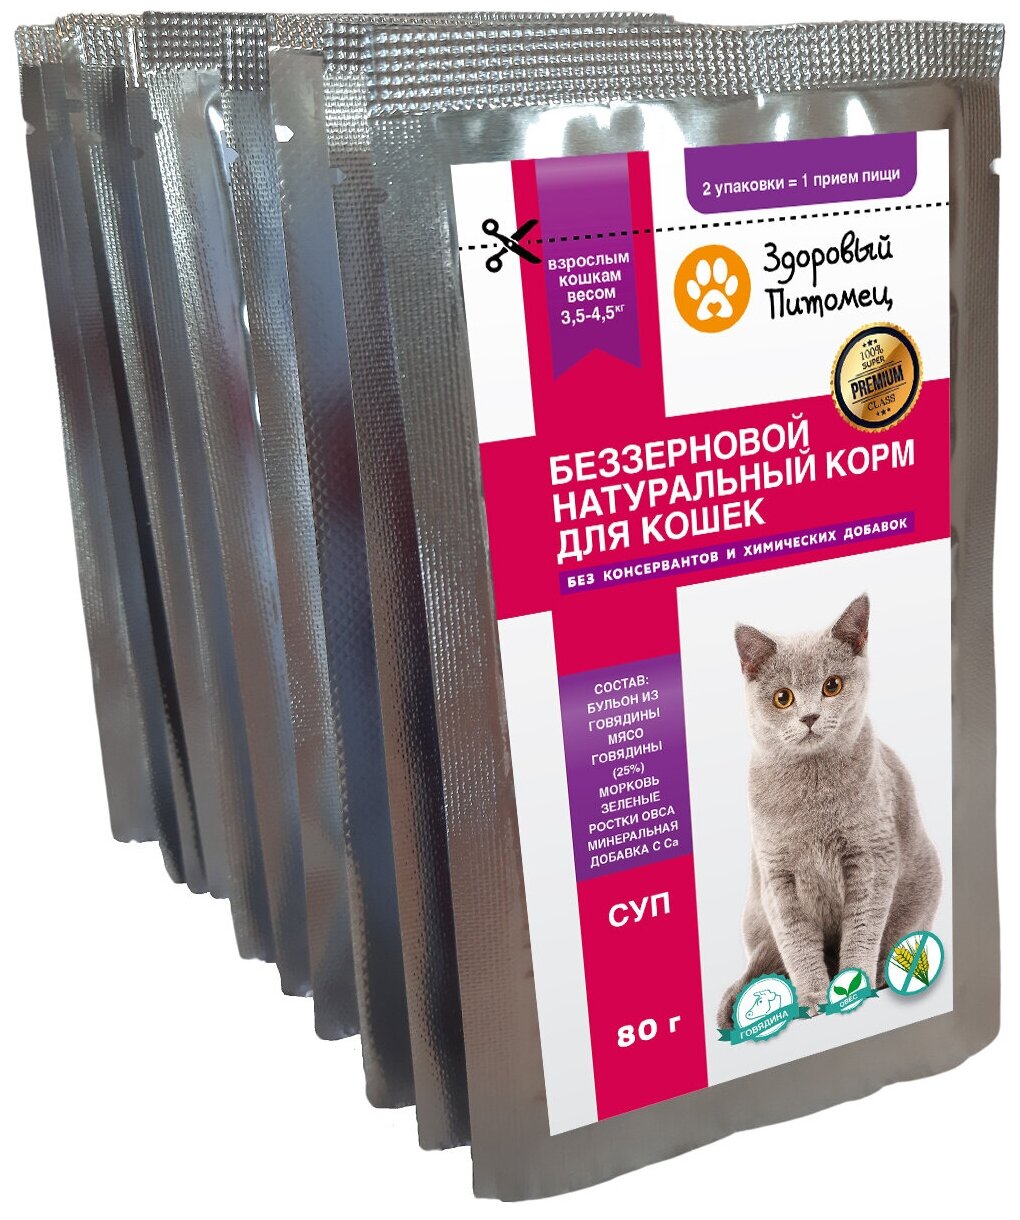 Влажный беззерновой натуральный корм (СУП) для кошек Здоровый Питомец 10шт по 80г, с говядиной и овощами